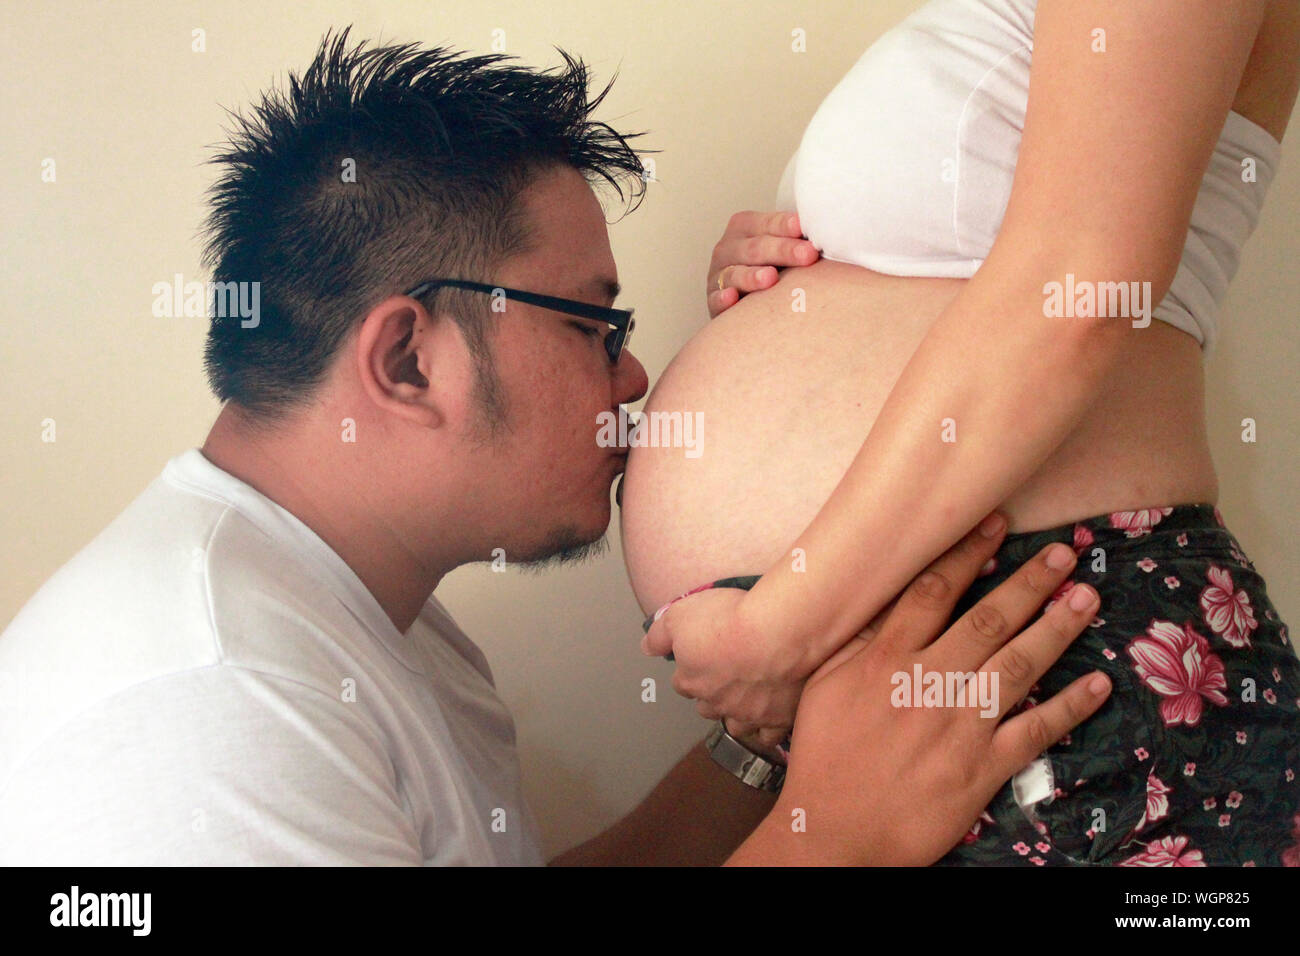 Vista lateral del abdomen de la mujer embarazada besos hombre contra la pared Foto de stock